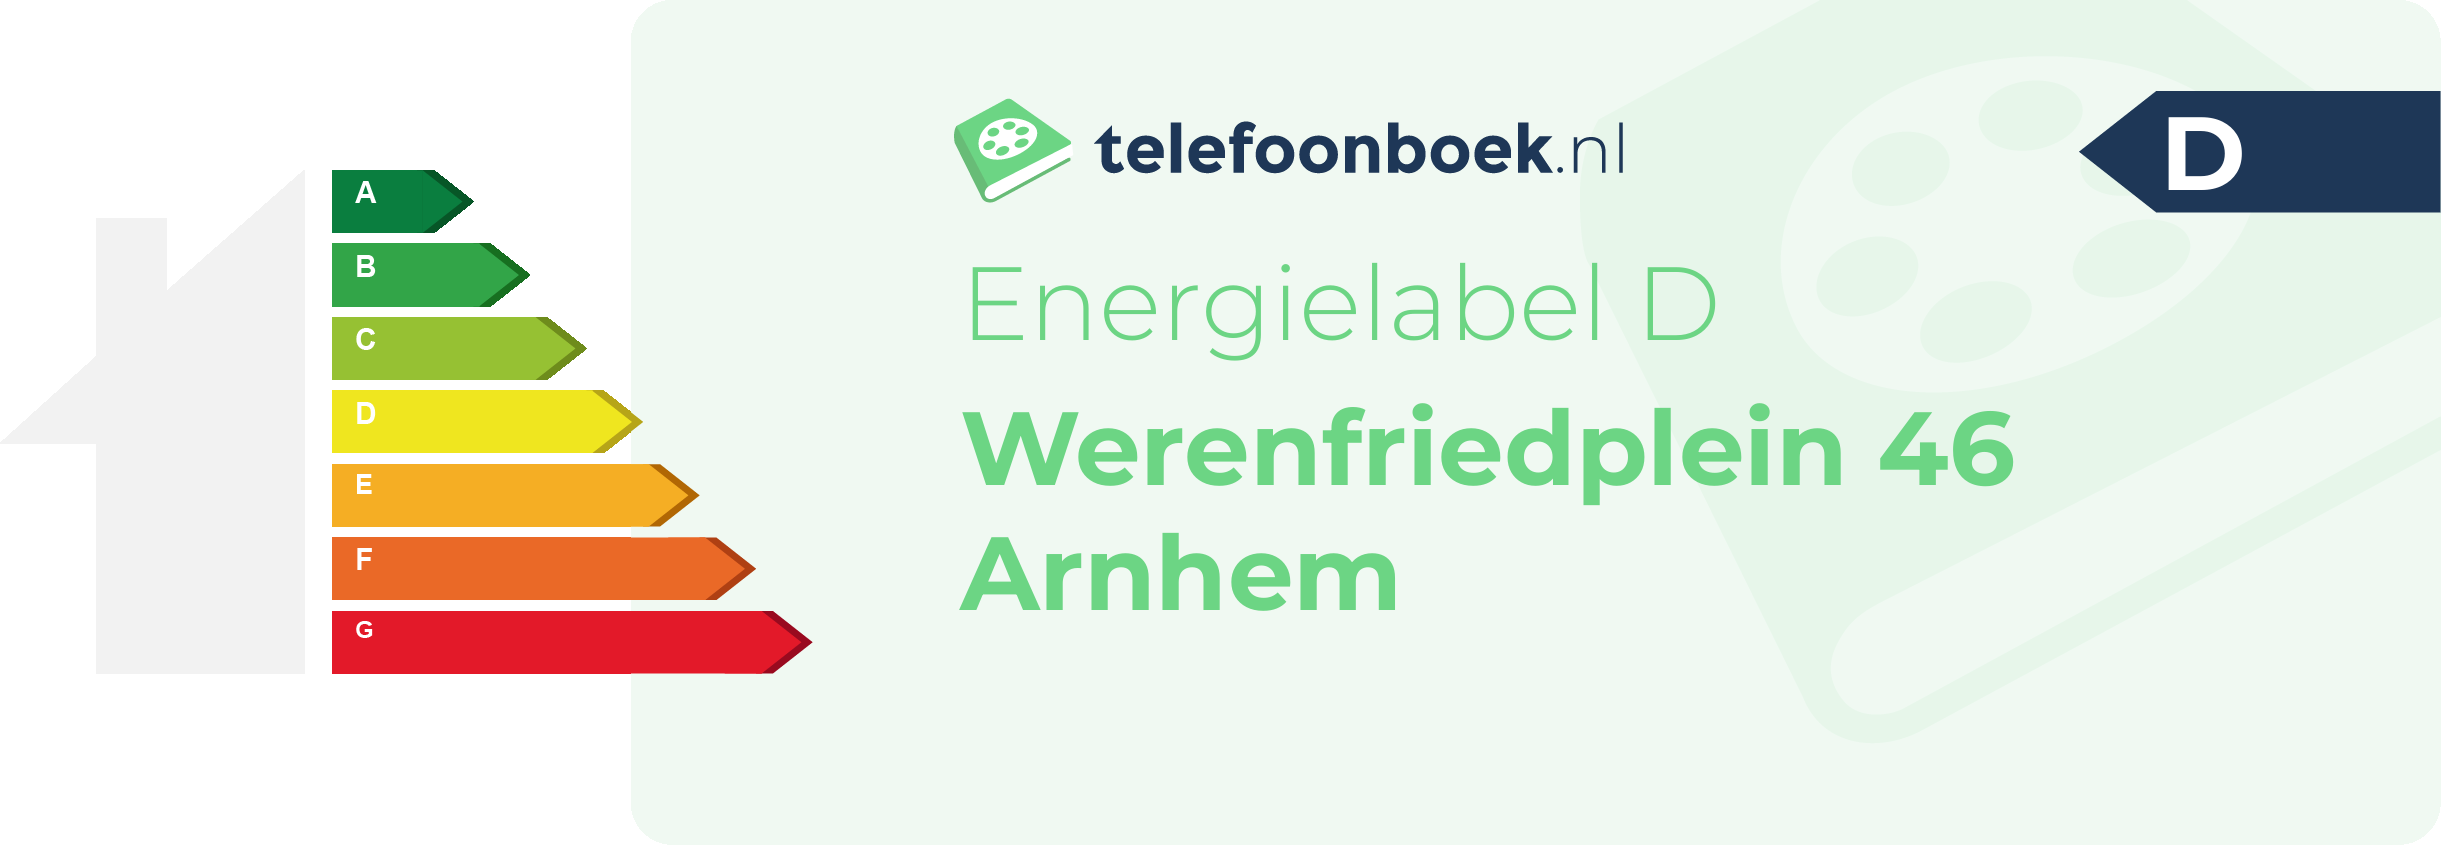 Energielabel Werenfriedplein 46 Arnhem